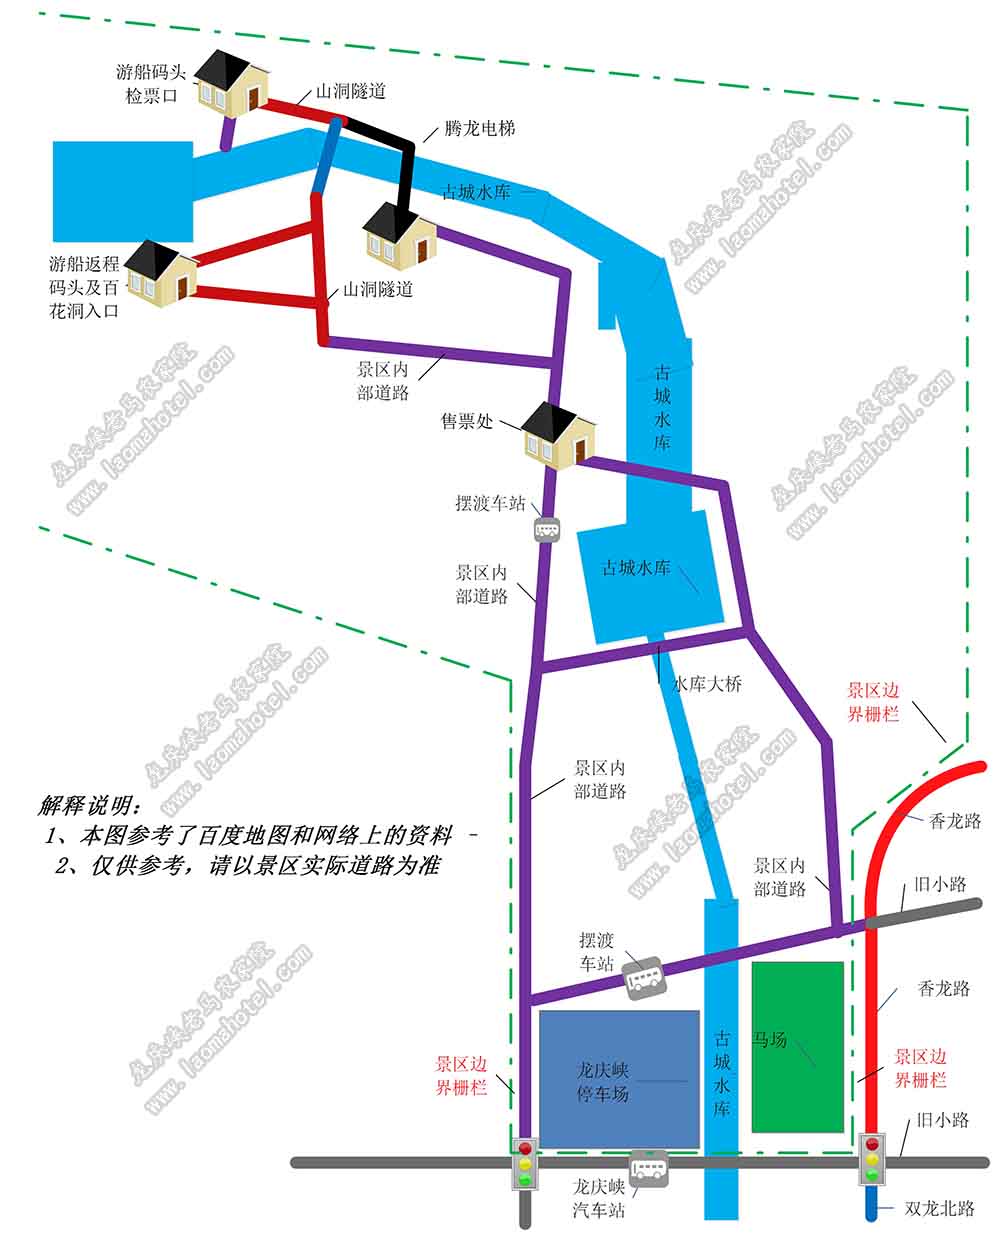 2021延庆龙庆峡风景区一日游攻略路线图，没有包括乘游船深入景区内部的景点及路线